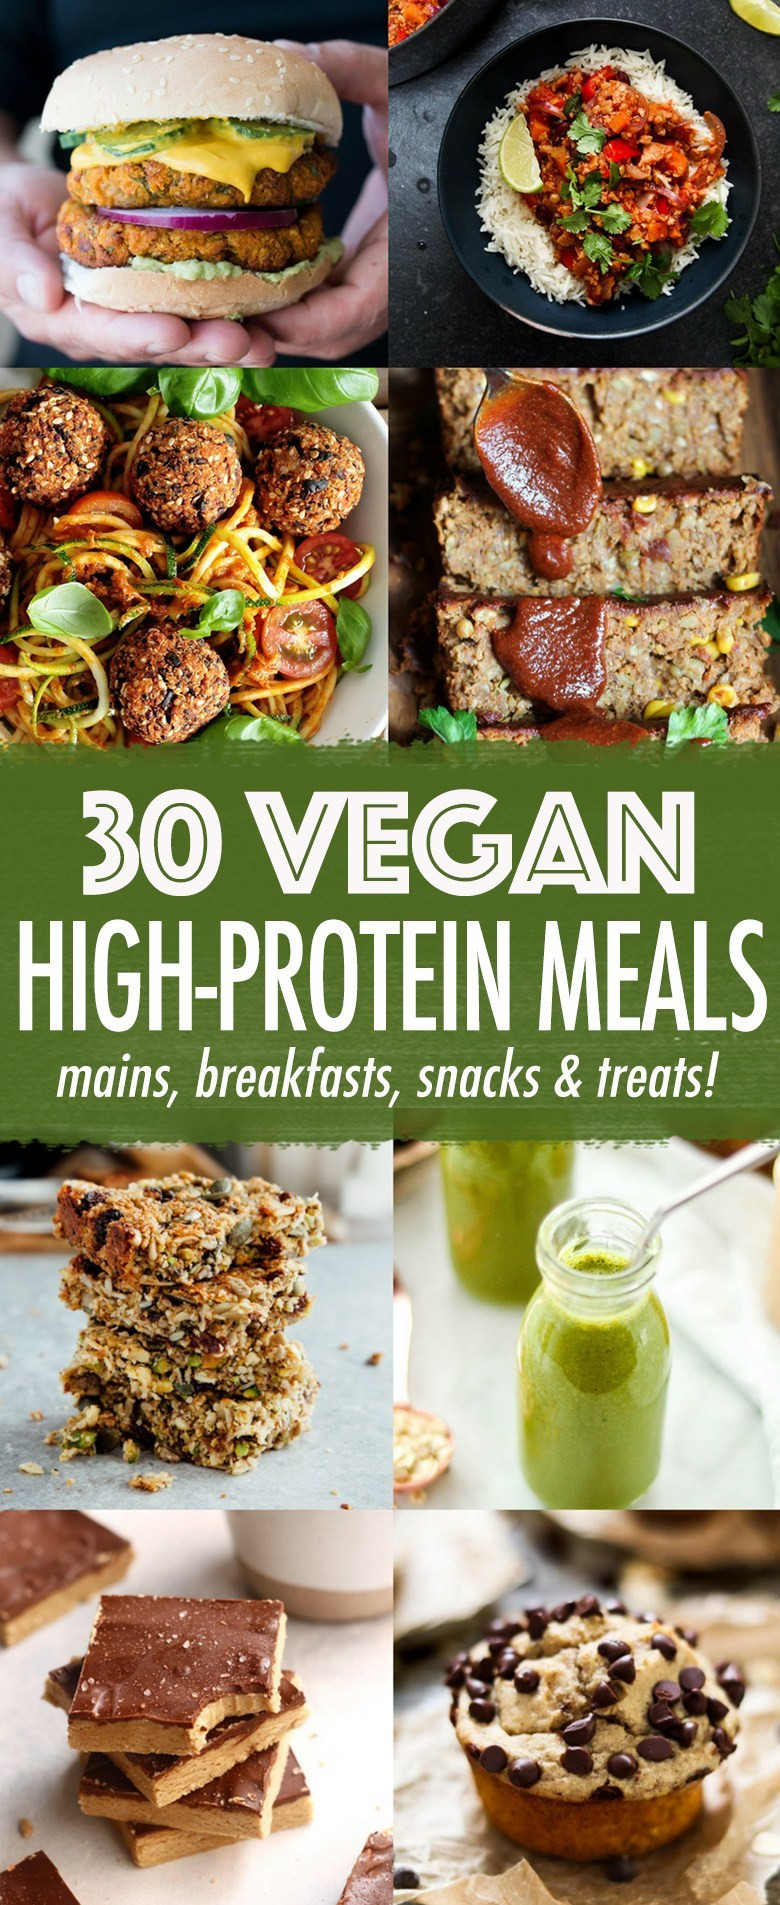 High Protein Vegetarian Food
 30 High protein Vegan Meals Wallflower Kitchen